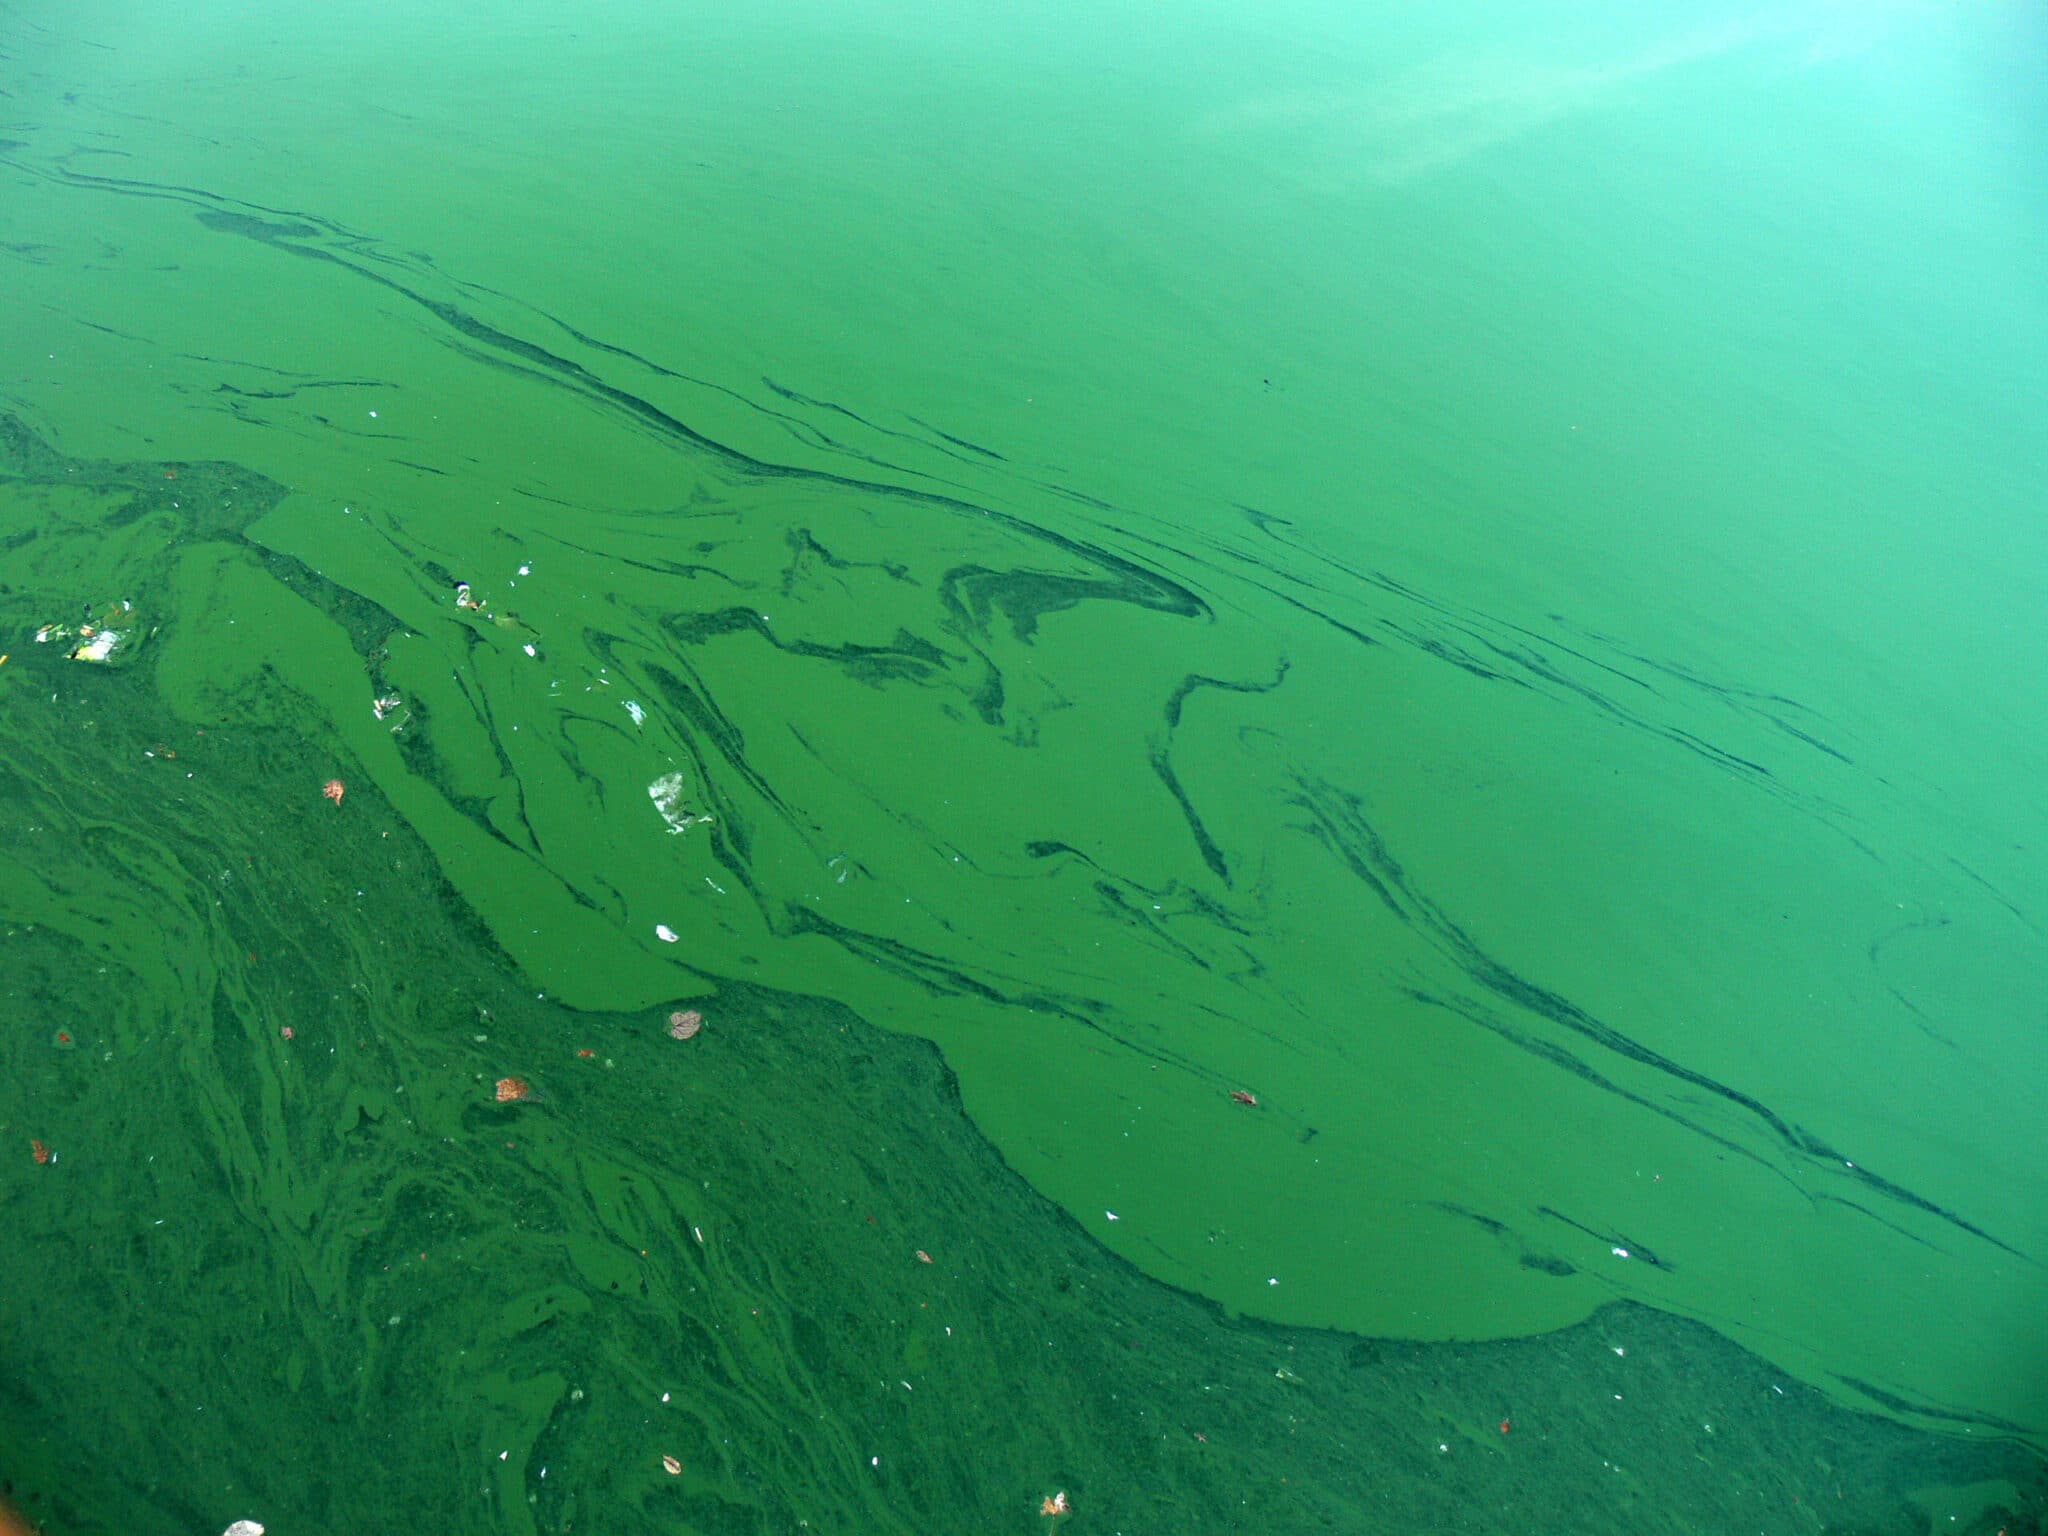  Ứng dụng Calcium Hypochlorite xử lý tảo trong nước thuỷ sản